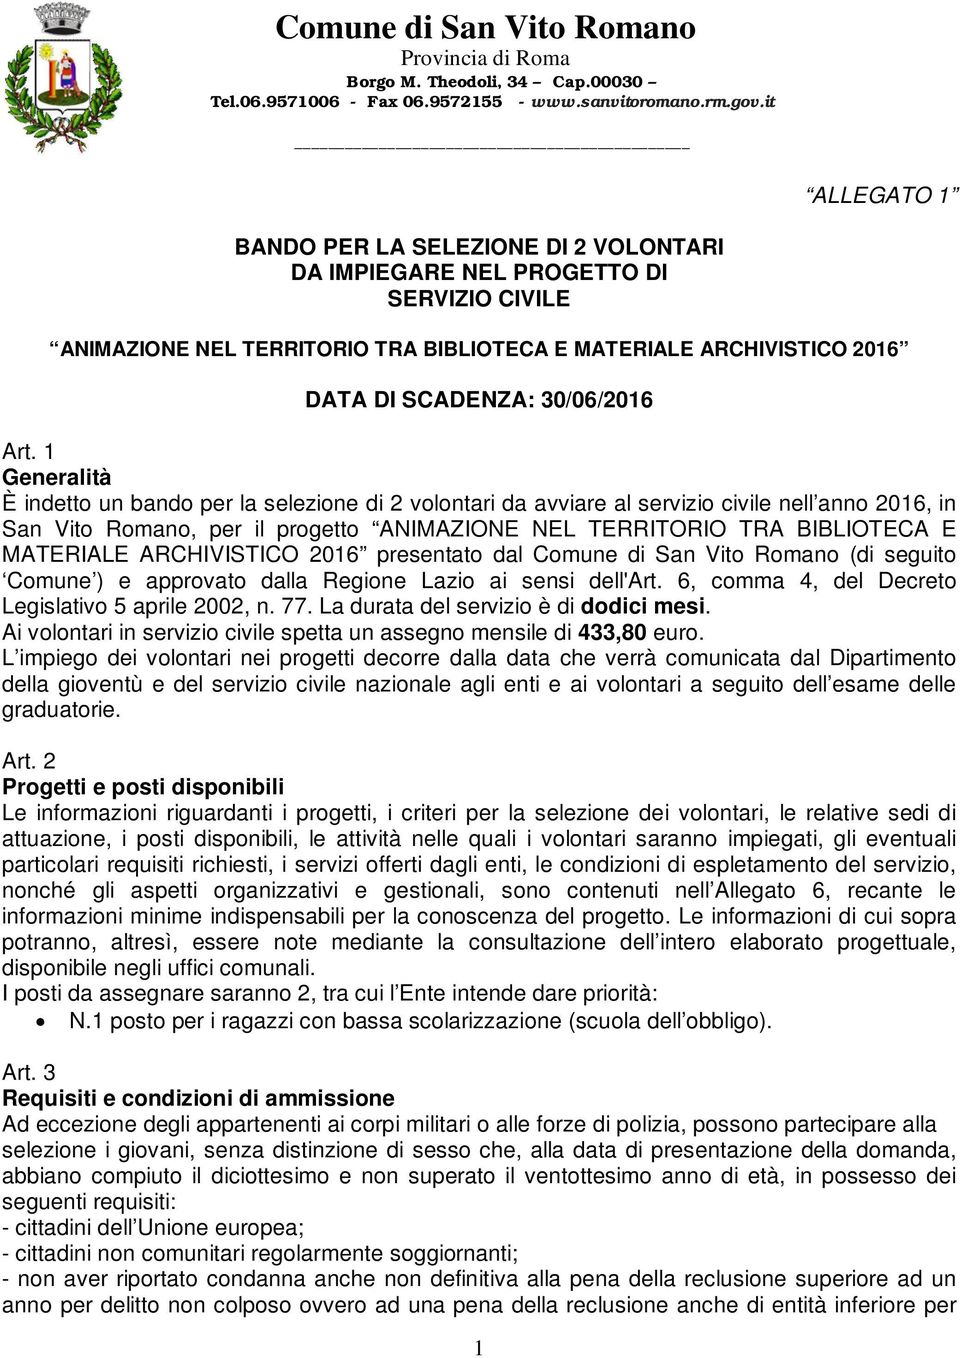 ARCHIVISTICO 2016 presentato dal Comune di San Vito Romano (di seguito Comune ) e approvato dalla Regione Lazio ai sensi dell'art. 6, comma 4, del Decreto Legislativo 5 aprile 2002, n. 77.